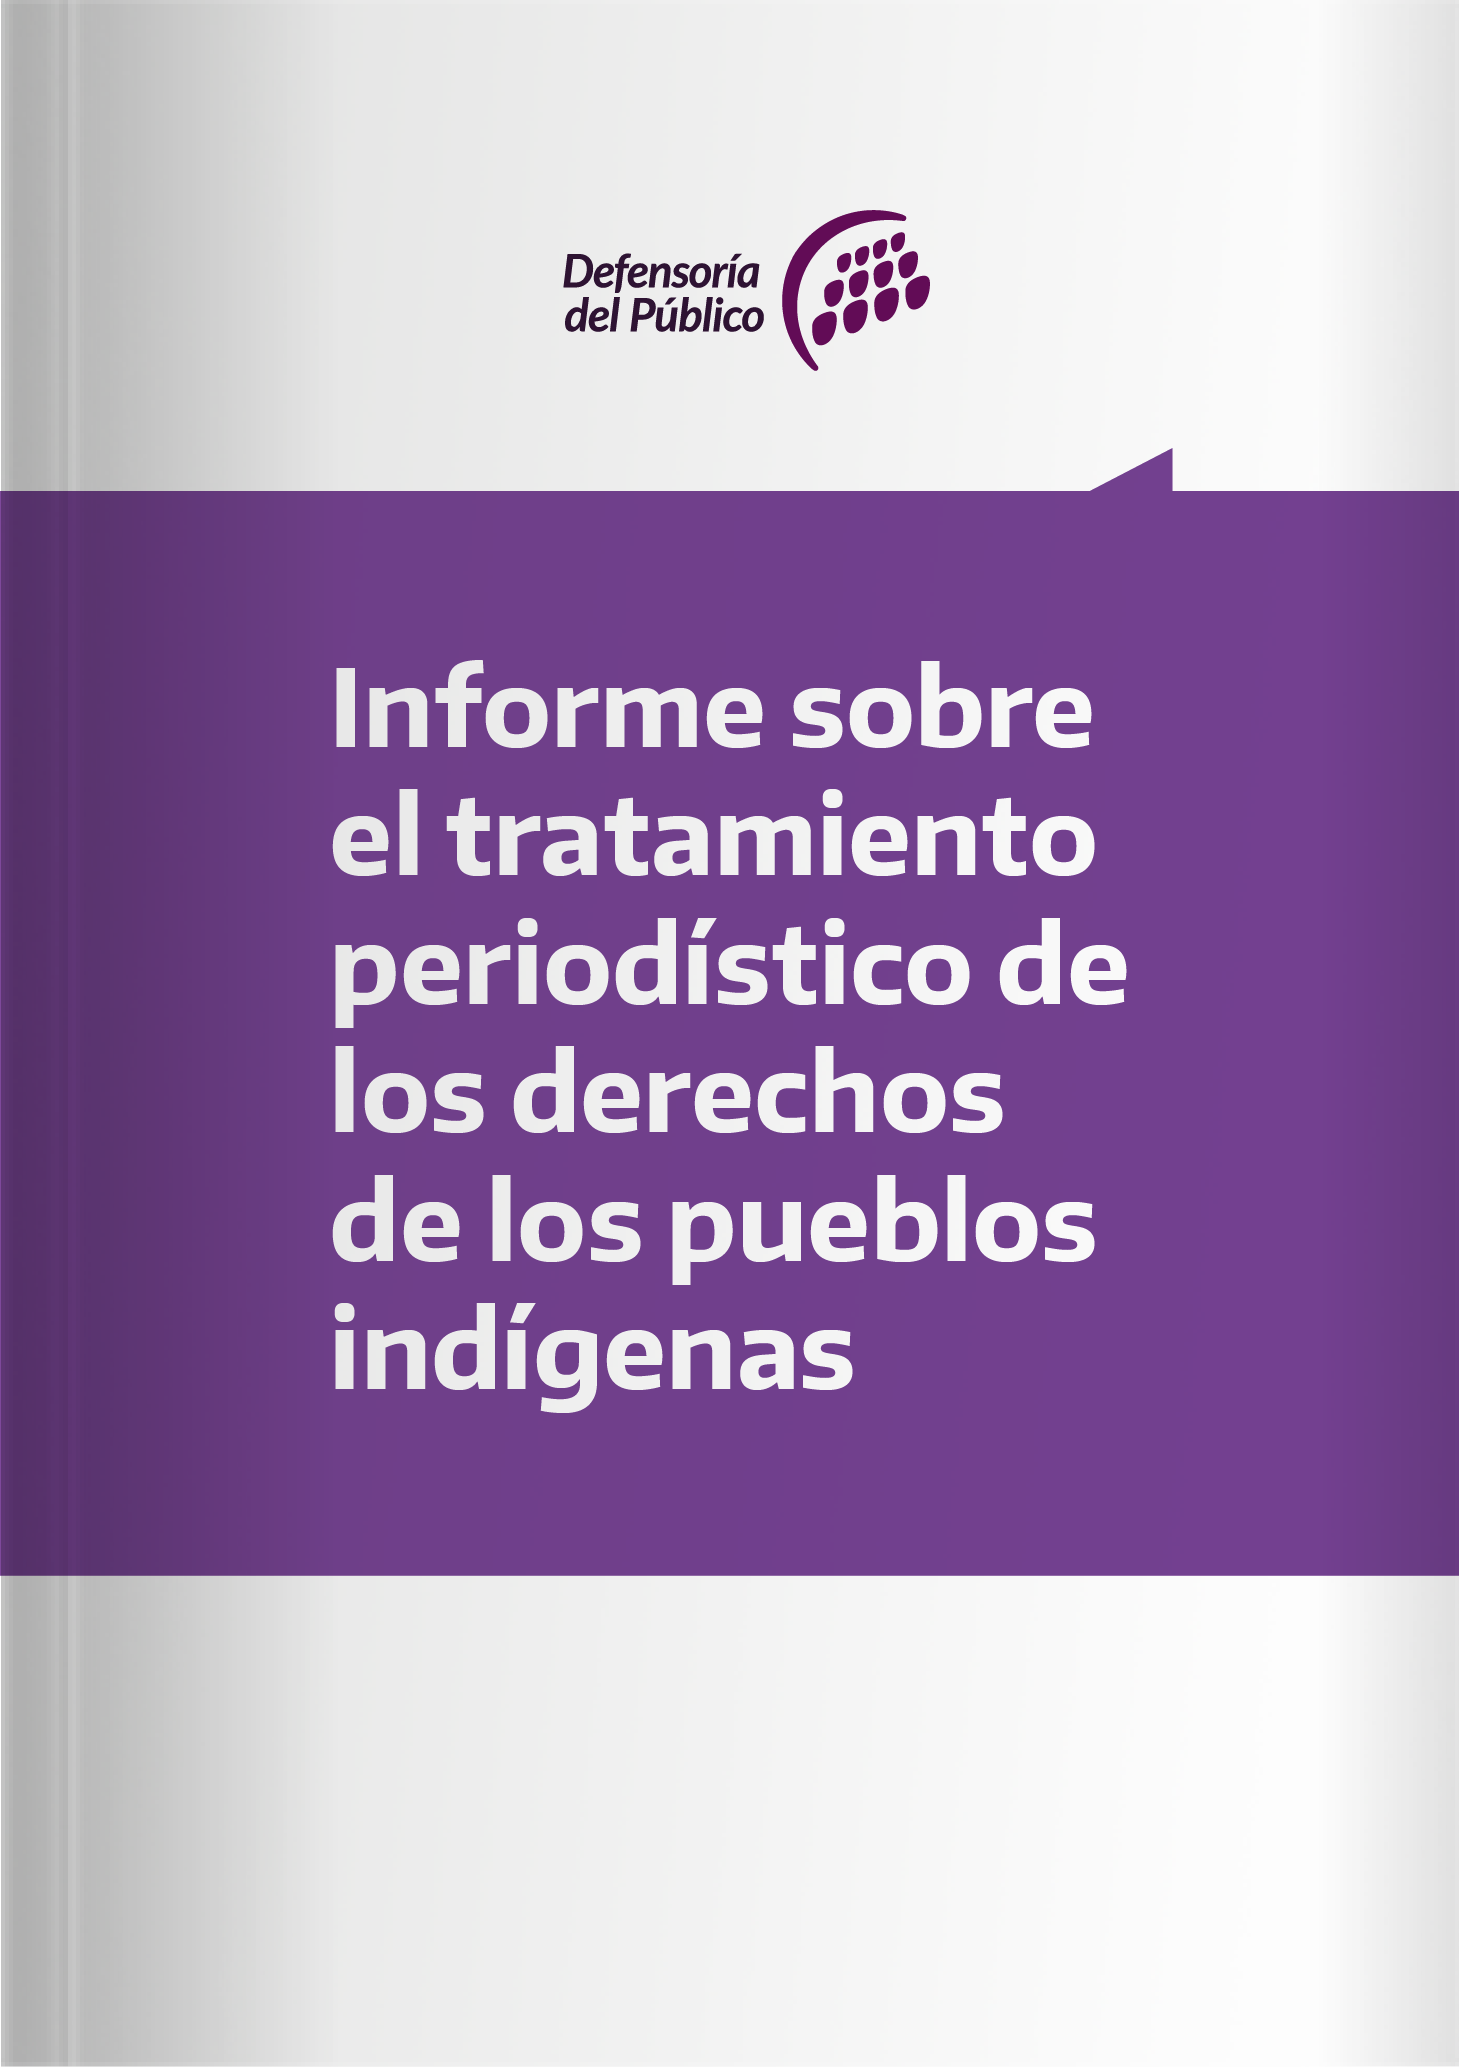 Informe sobre el tratamiento periodístico de los derechos de los pueblos indígenas